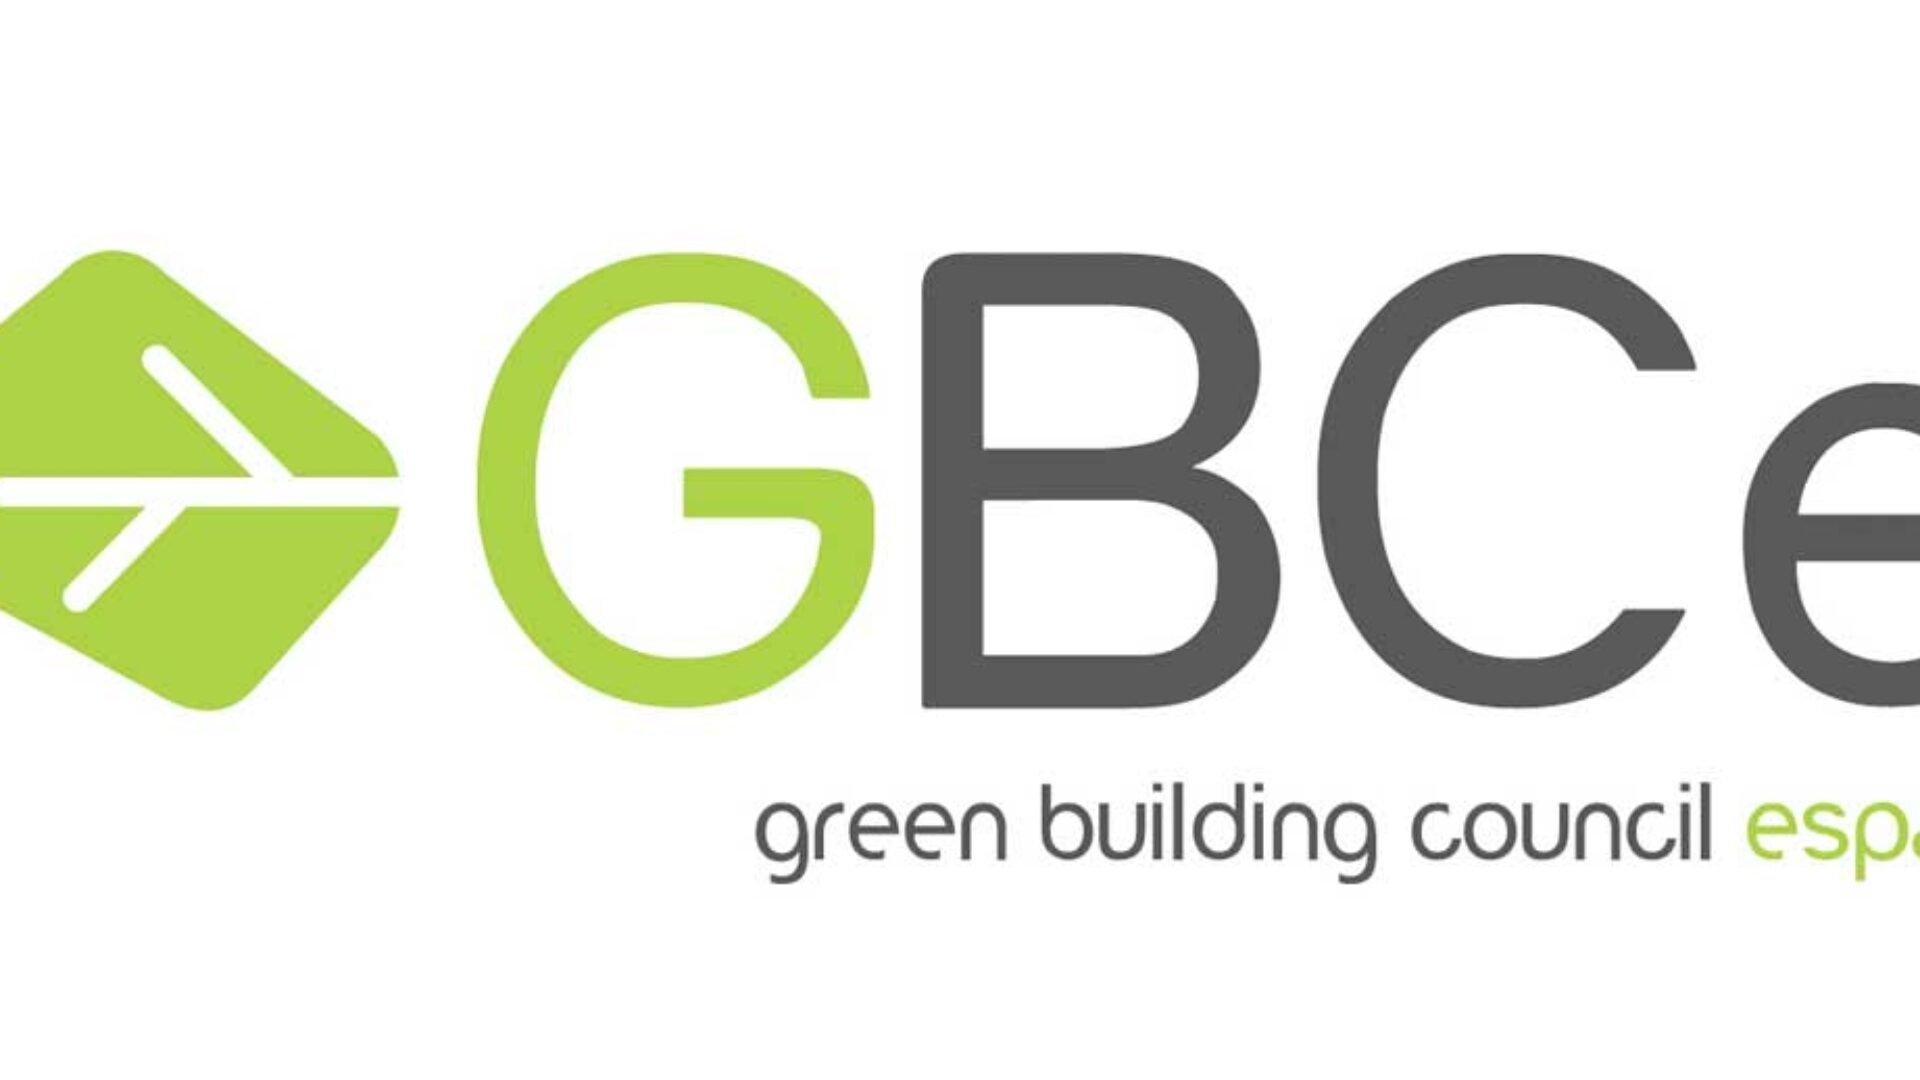 GBCe: Gala Aragonesa de la Edificación: Retos sostenibles y oportunidades del sector